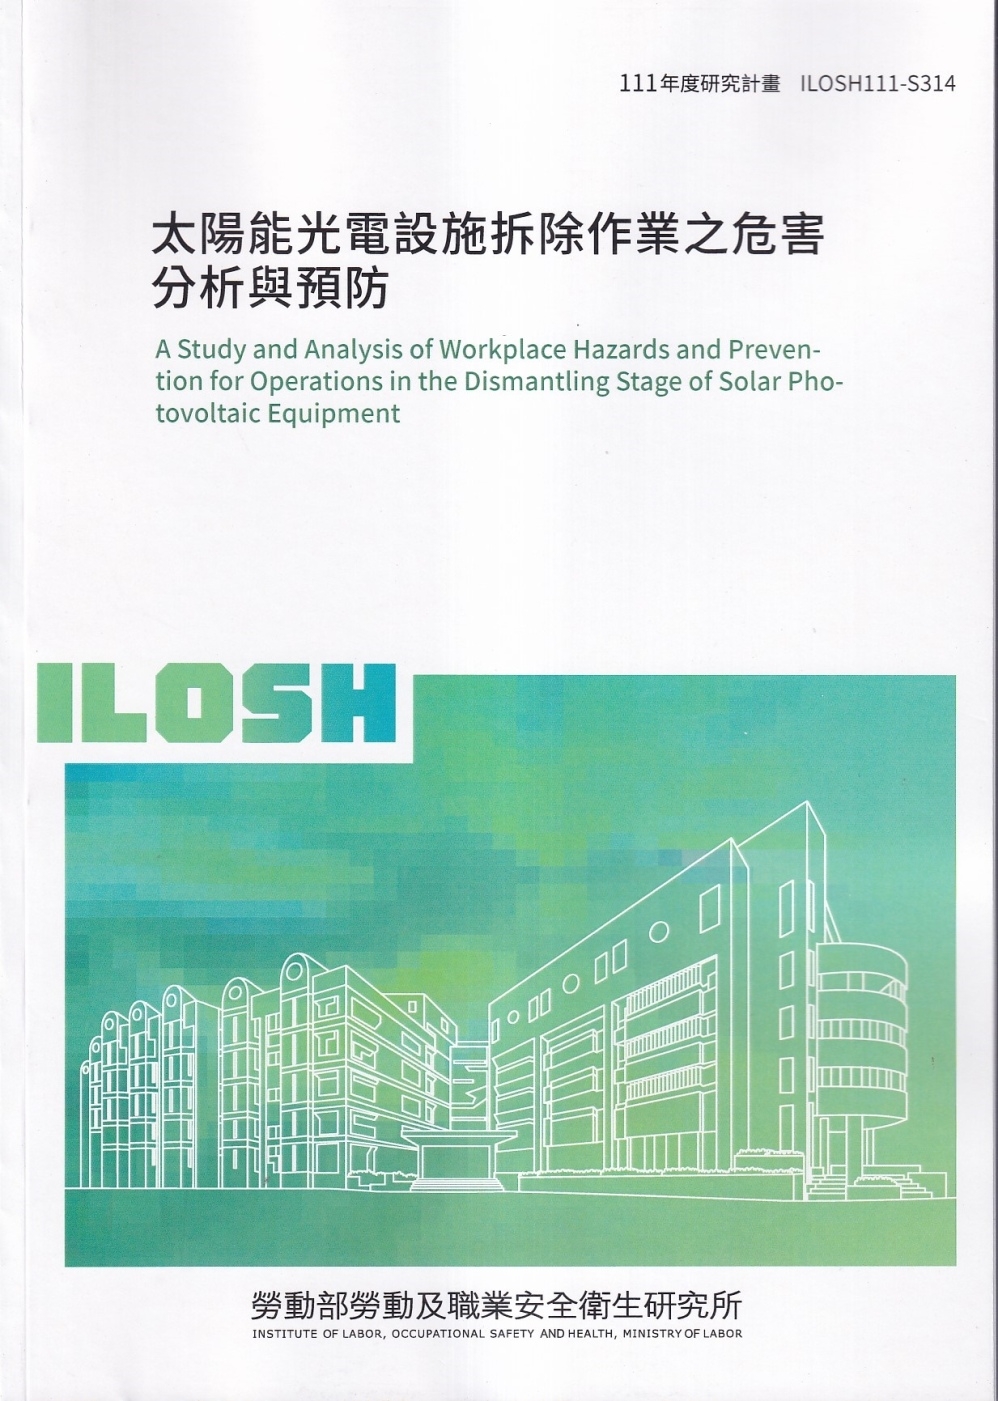 太陽能光電設施拆除作業之危害分析與預防ILOSH111-S314